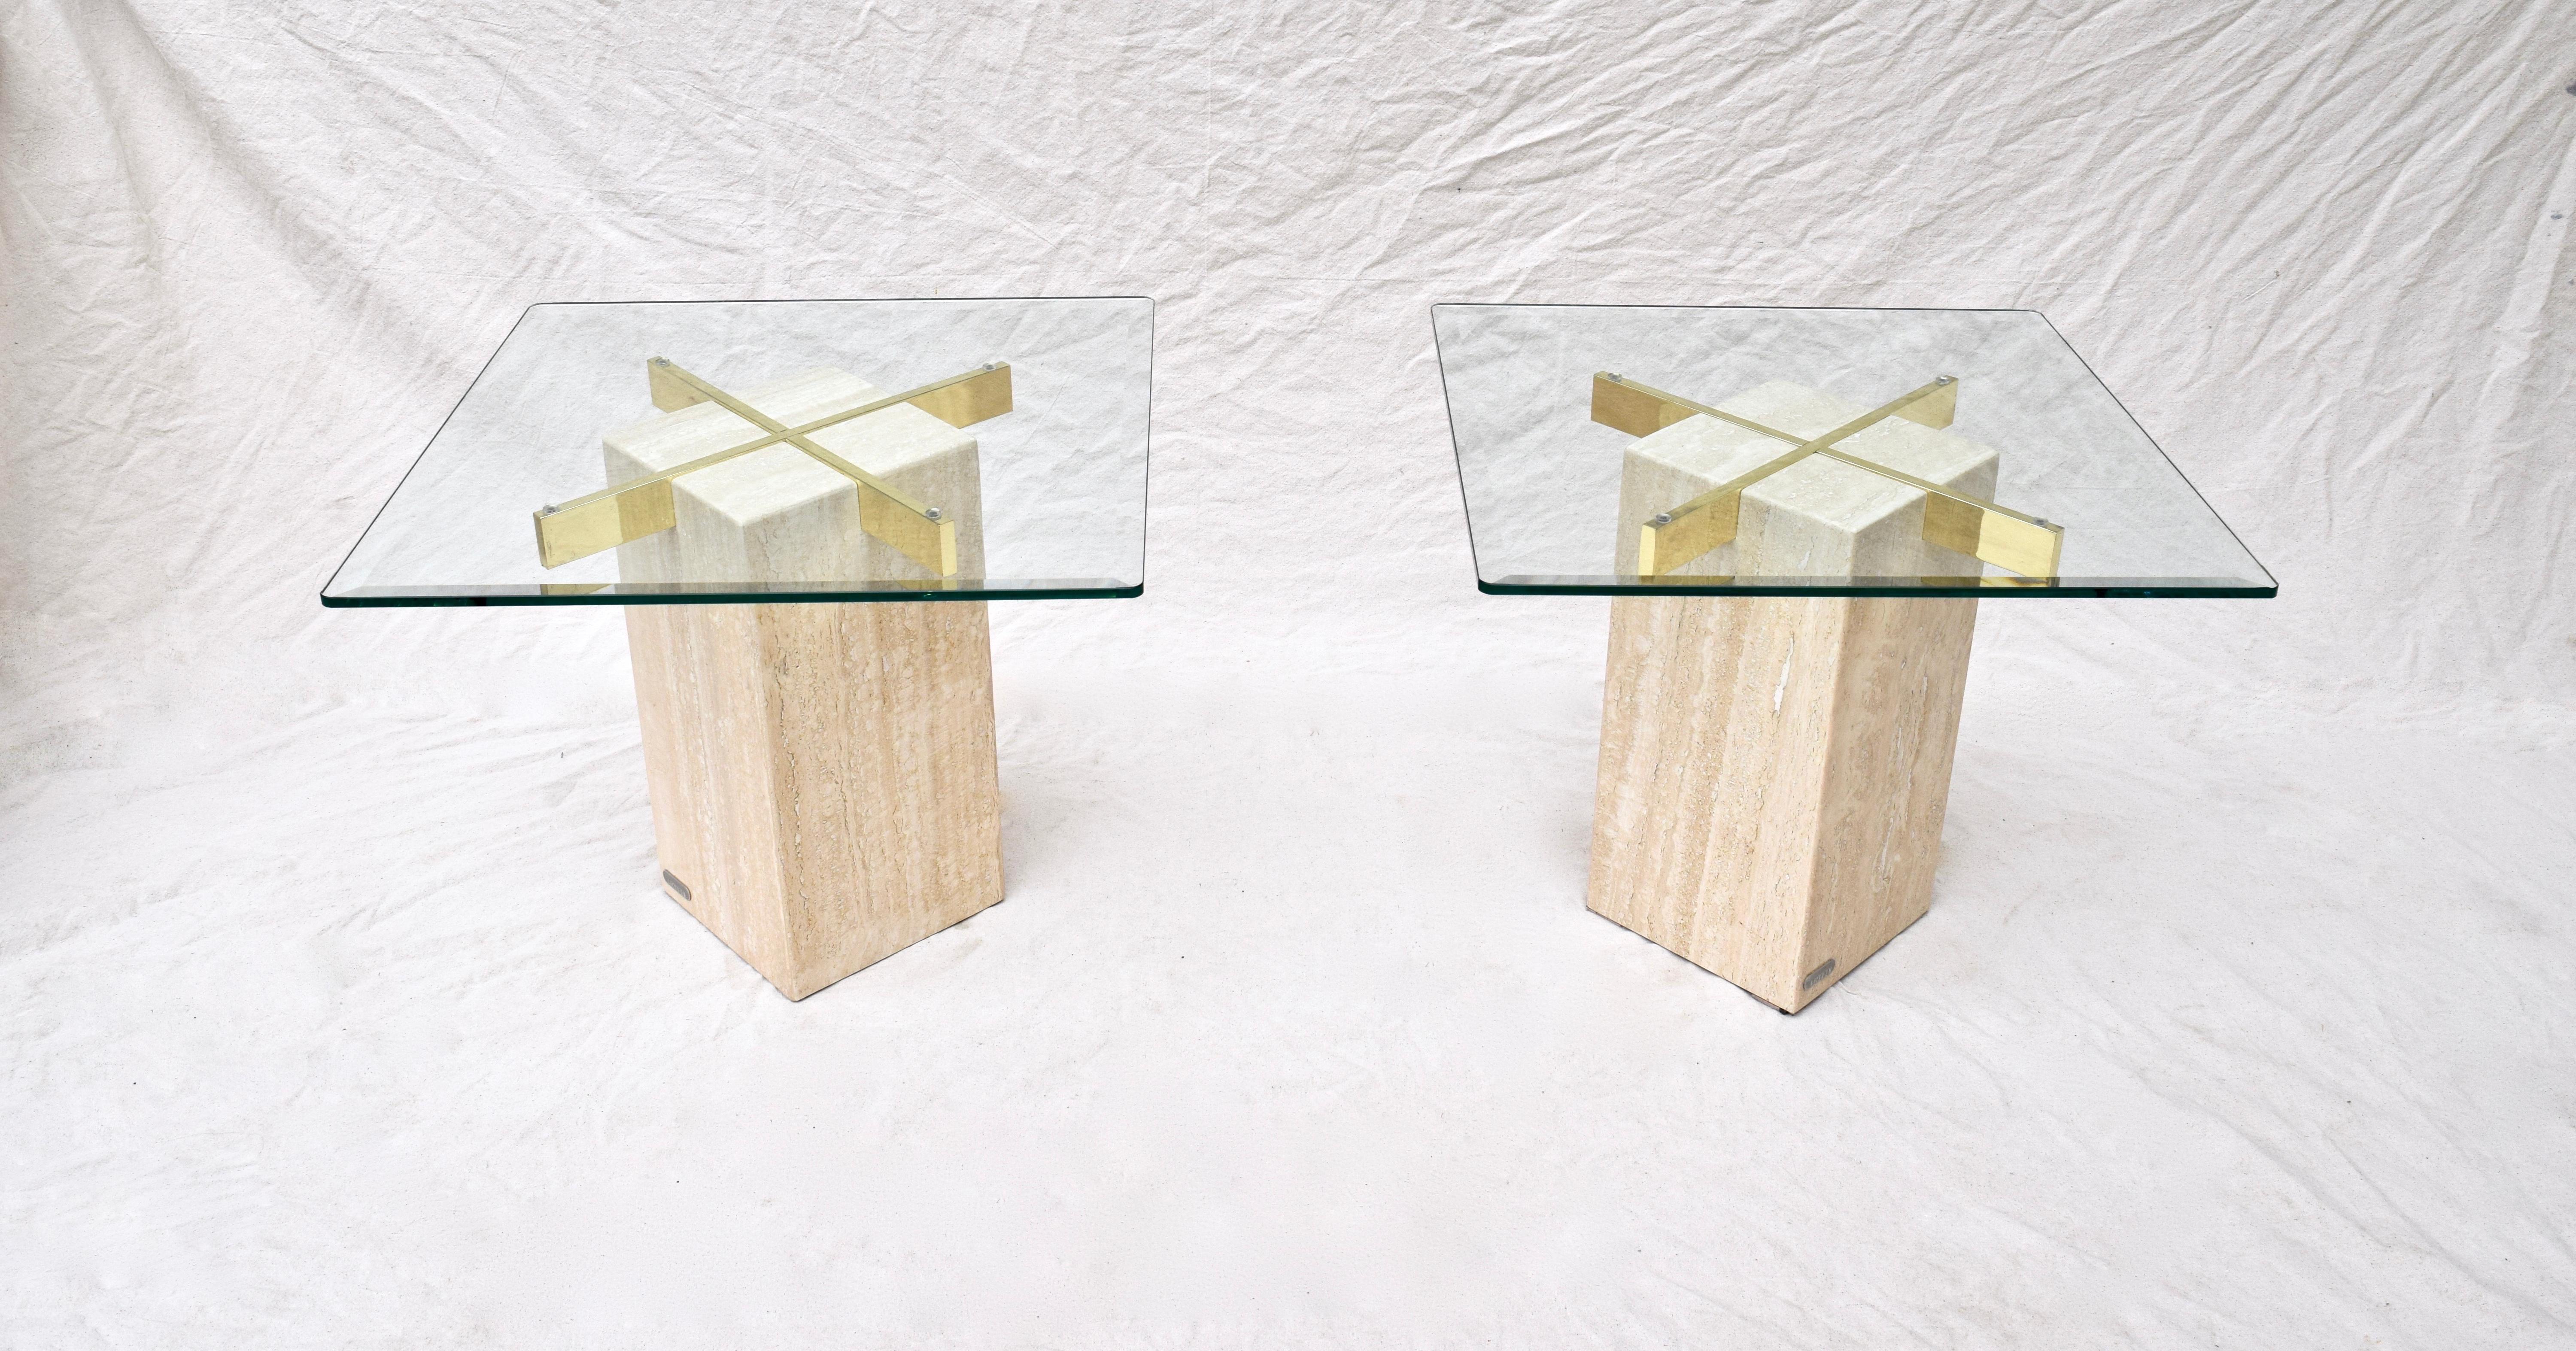 Paire de tables sculpturales fabriquées par Artedi au Royaume-Uni. Chaque table est dotée d'une base en marbre travertin, d'un plateau en verre subtilement biseauté et d'un support en X inversé en laiton poli. Les médaillons métalliques originaux